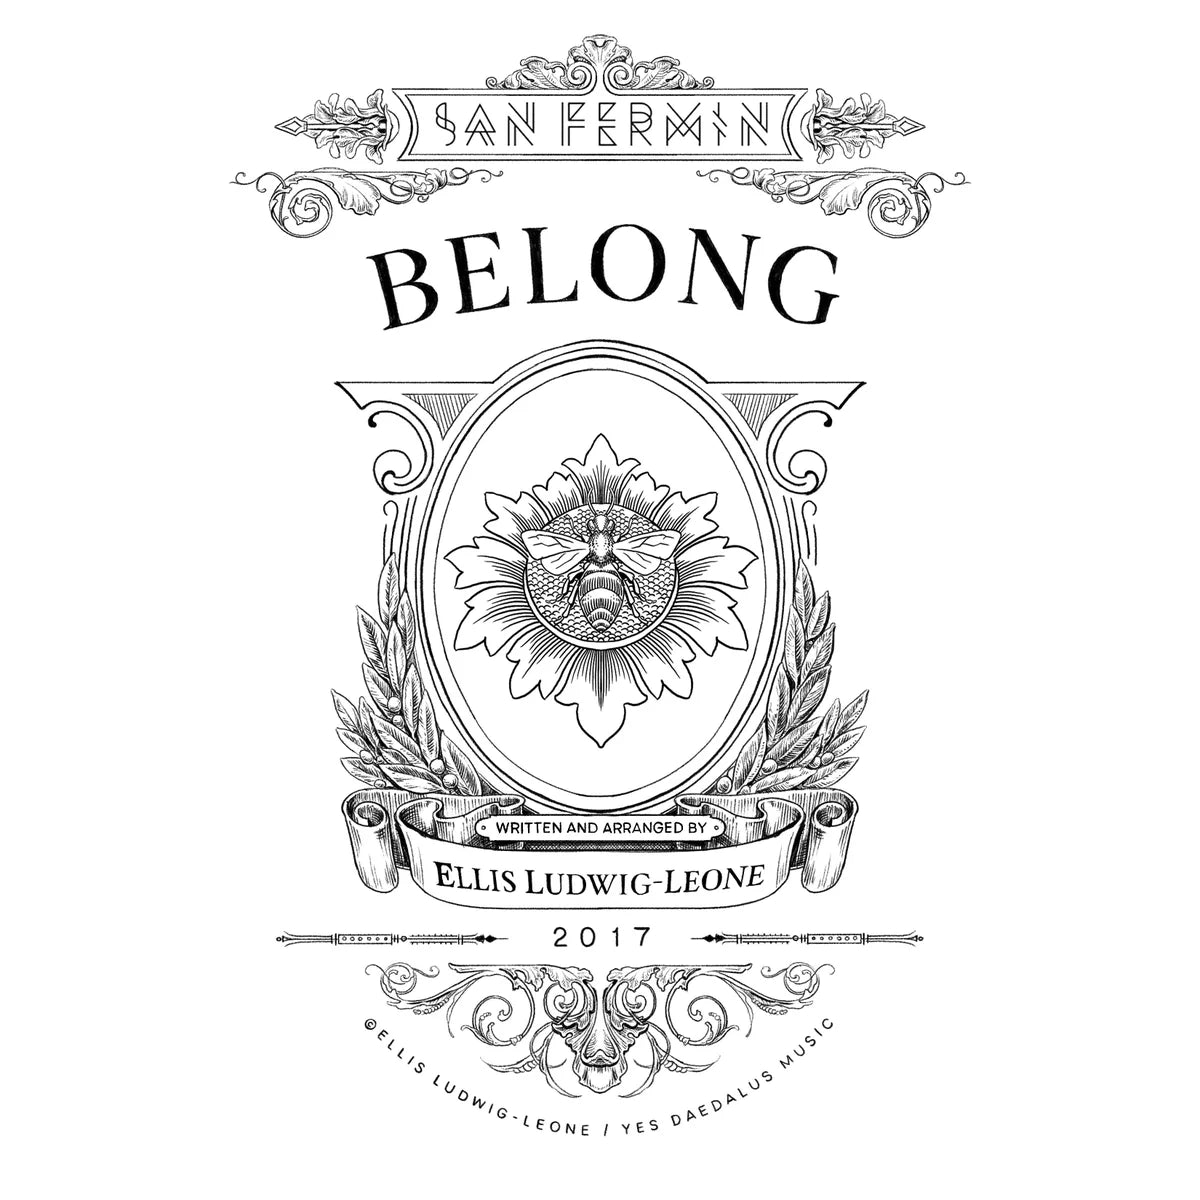 Belong - Individual Song Sheet Music